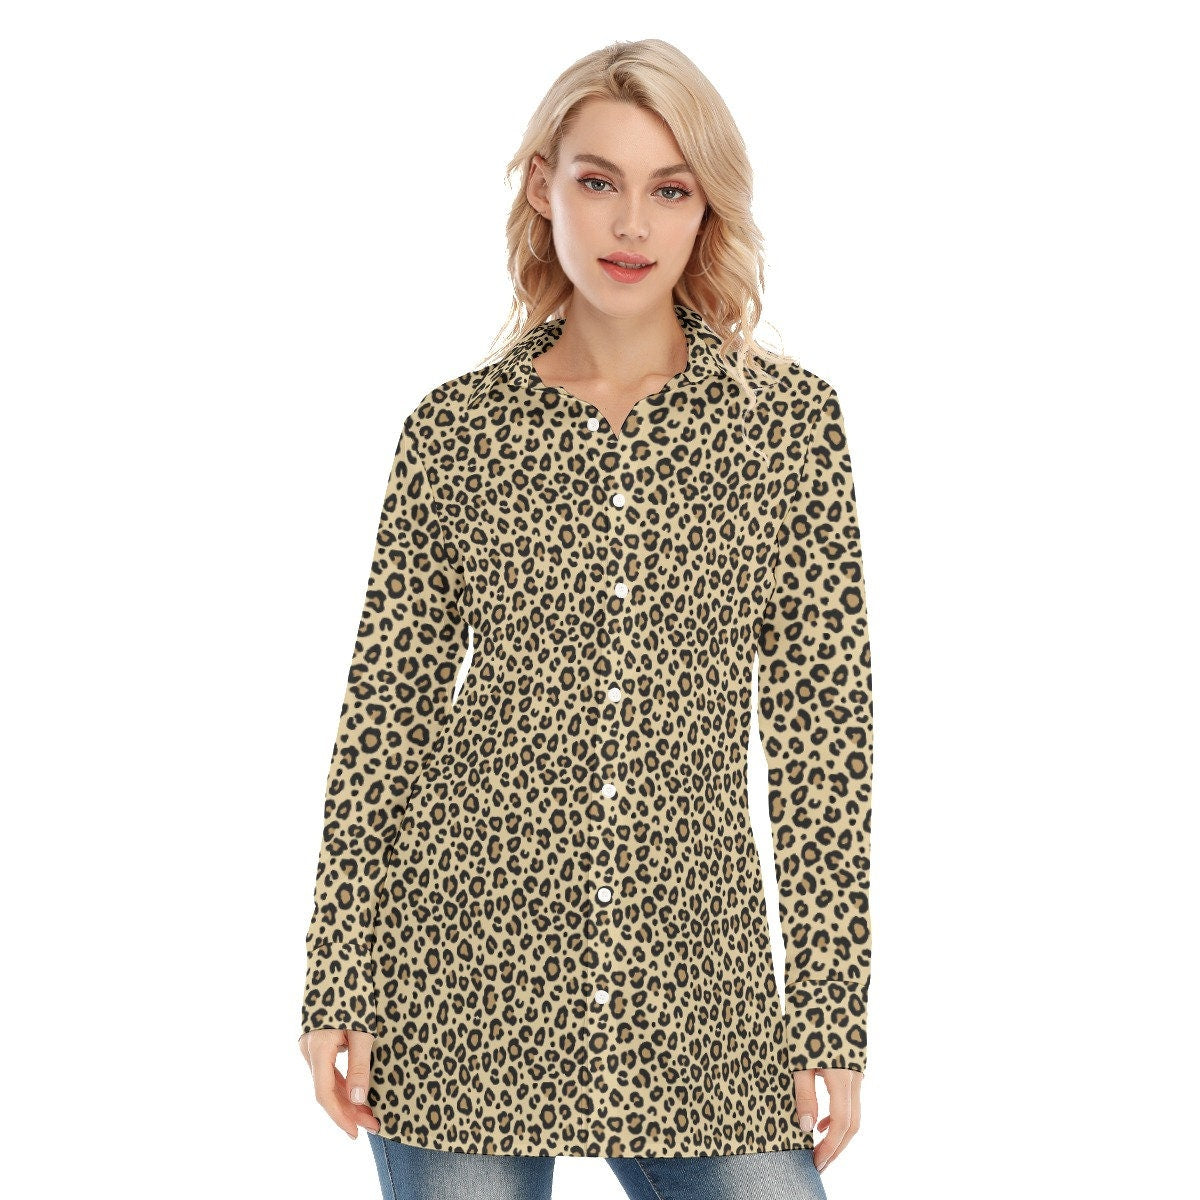 Leopard Shirt, Handmade Leopard Print Shirt, Sexy Shirt, Animal Print Shirt,Women's Blouse,Women's Top,Long Sleeve Shirt Women, High fashion